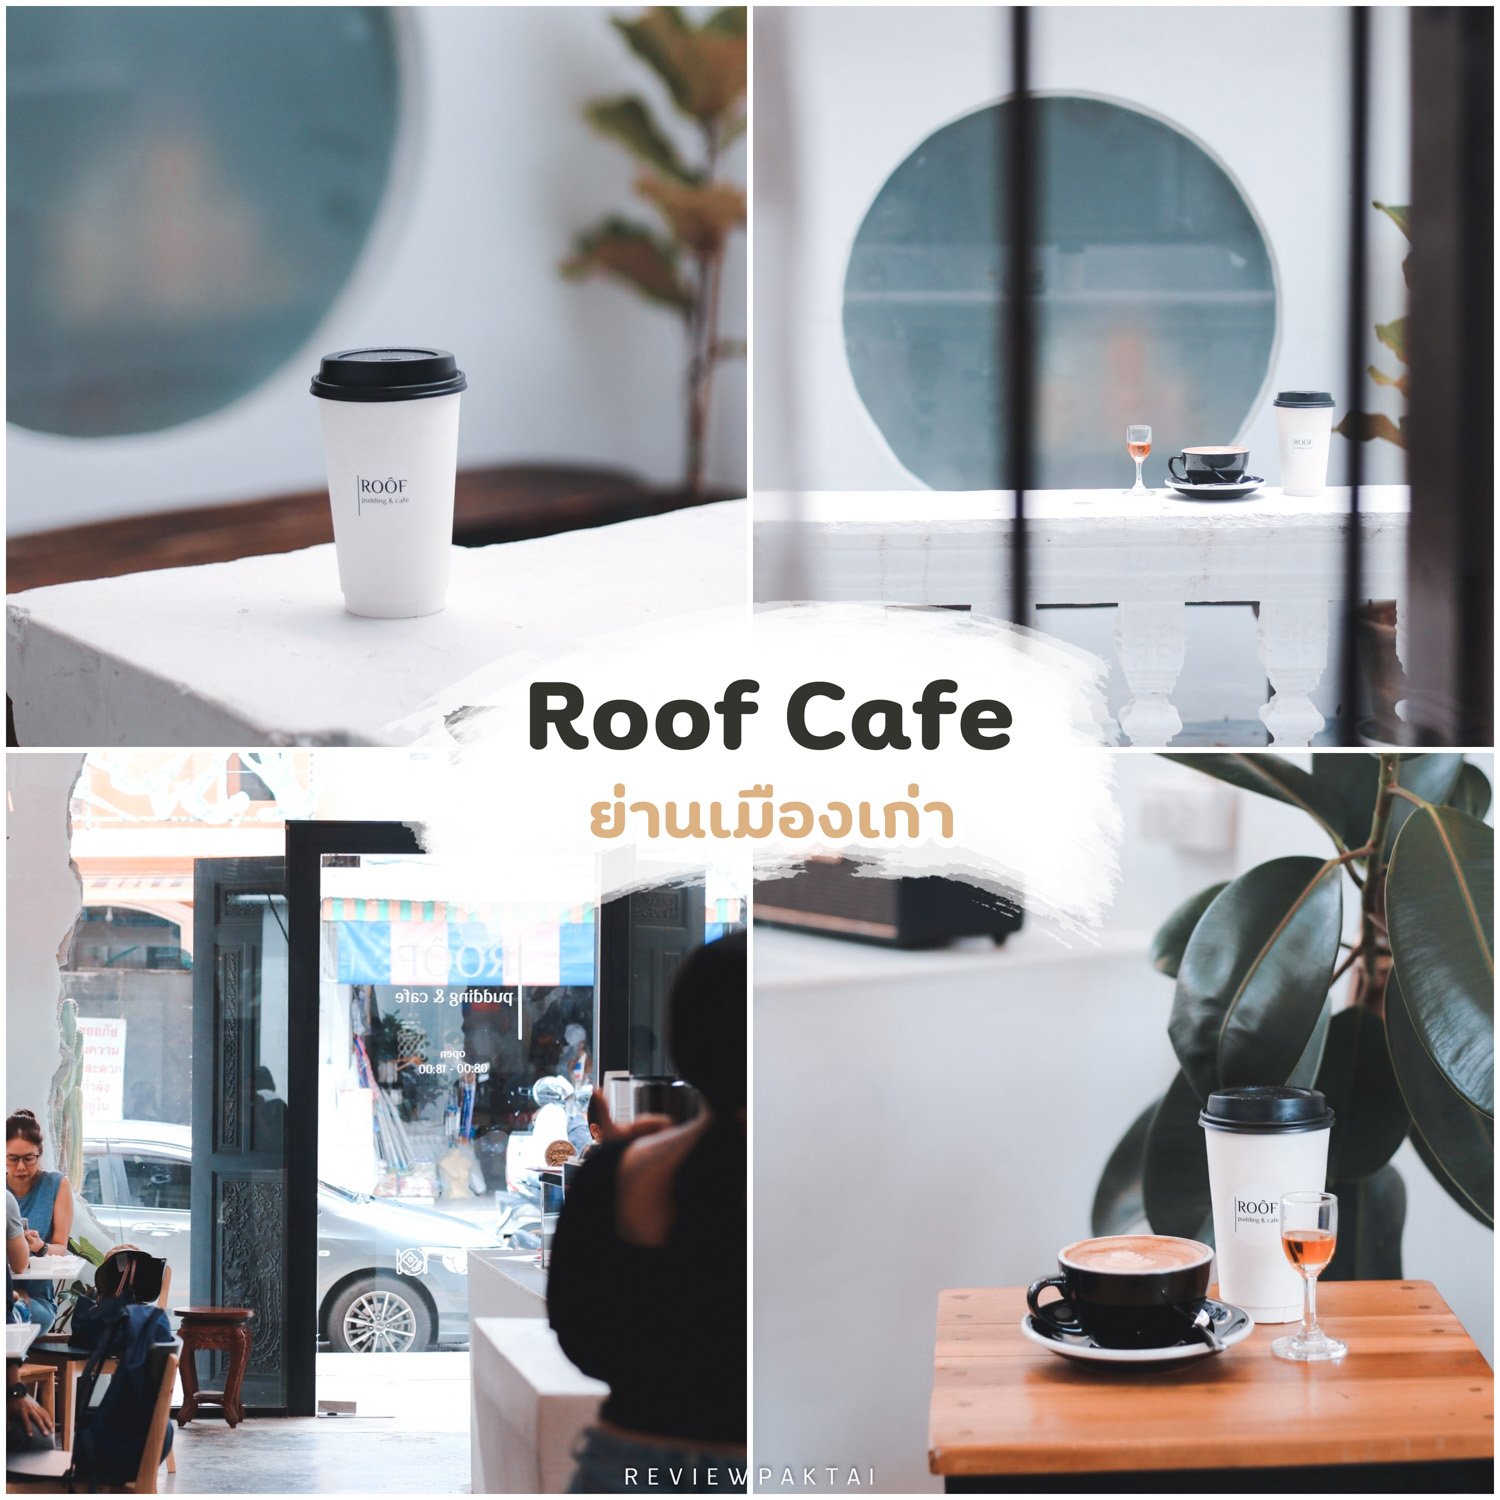 Roof-Cafe- คาเฟ่สุดสวยสไตล์มินิมอลย่านเมืองเก่า-มัทฉะคือหอมๆฟินๆเลยย
 ที่เที่ยวภูเก็ต,ย่านเมืองเก่า